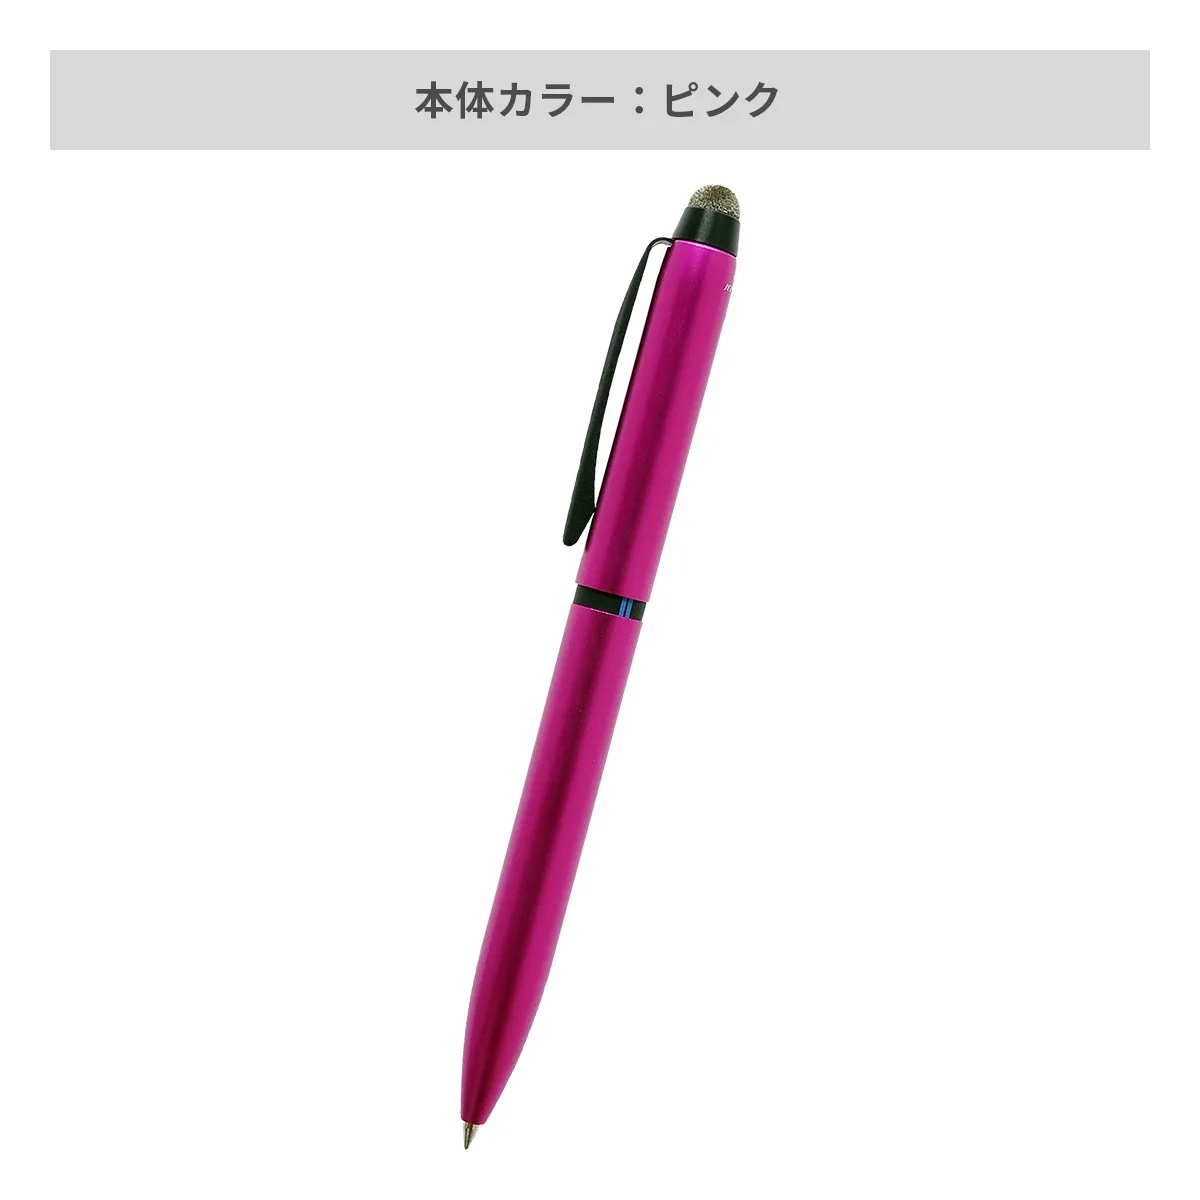 【短納期】三菱鉛筆 ジェットストリーム スタイラス 3色ボールペン 0.5mm【多機能ペン / レーザー彫刻】 画像4